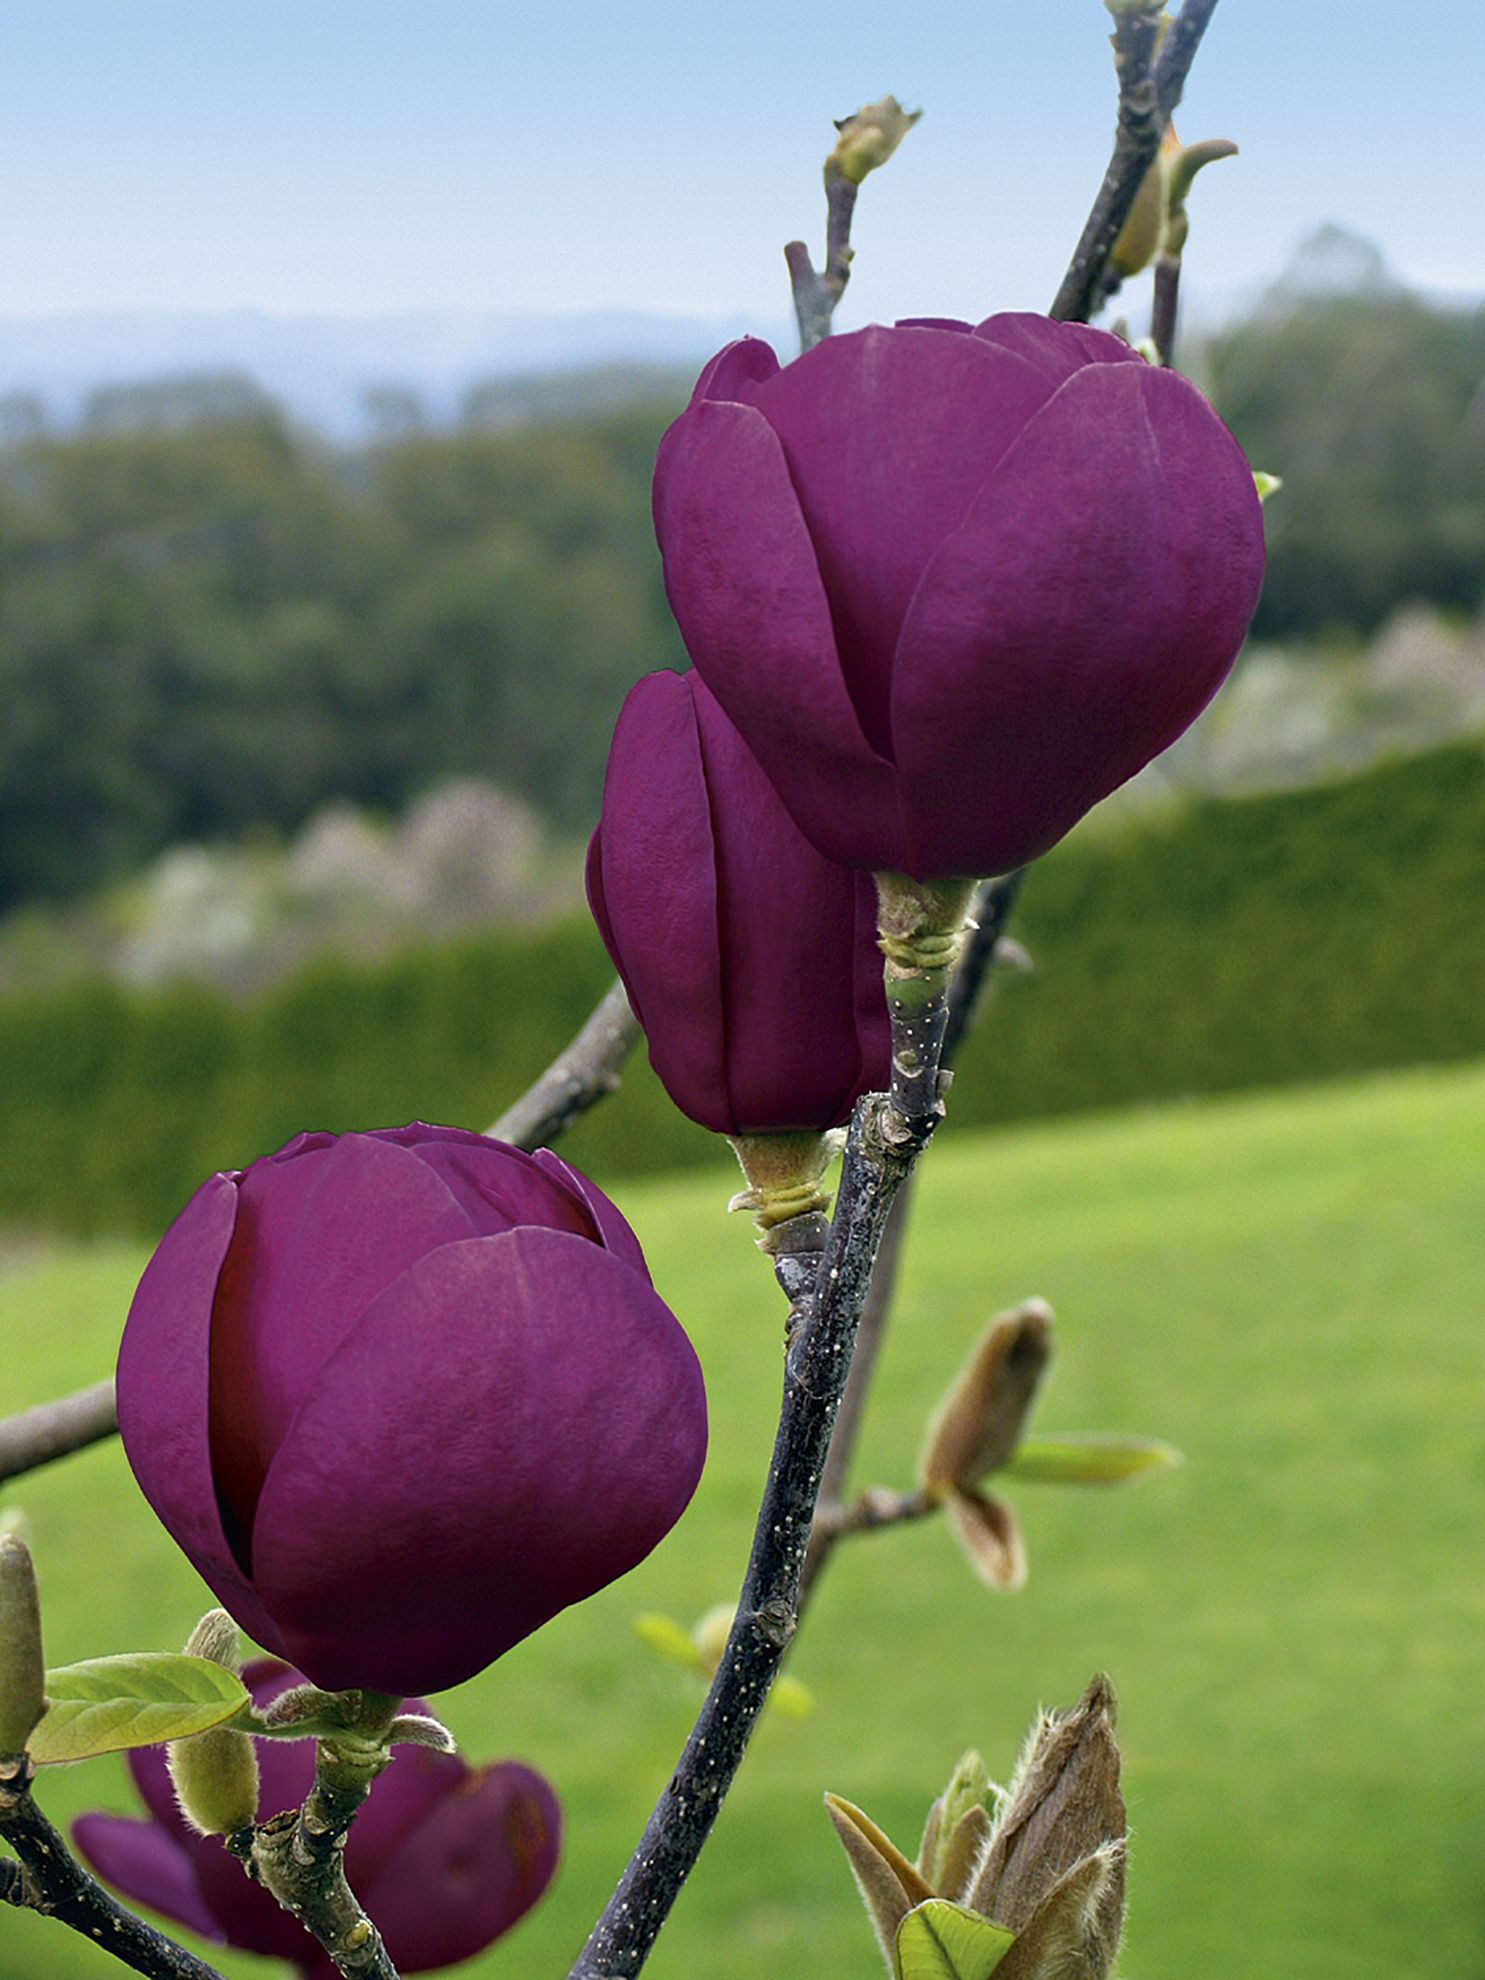 http://breederplants.nl/images/thumbs/0002188_magnolia.jpeg